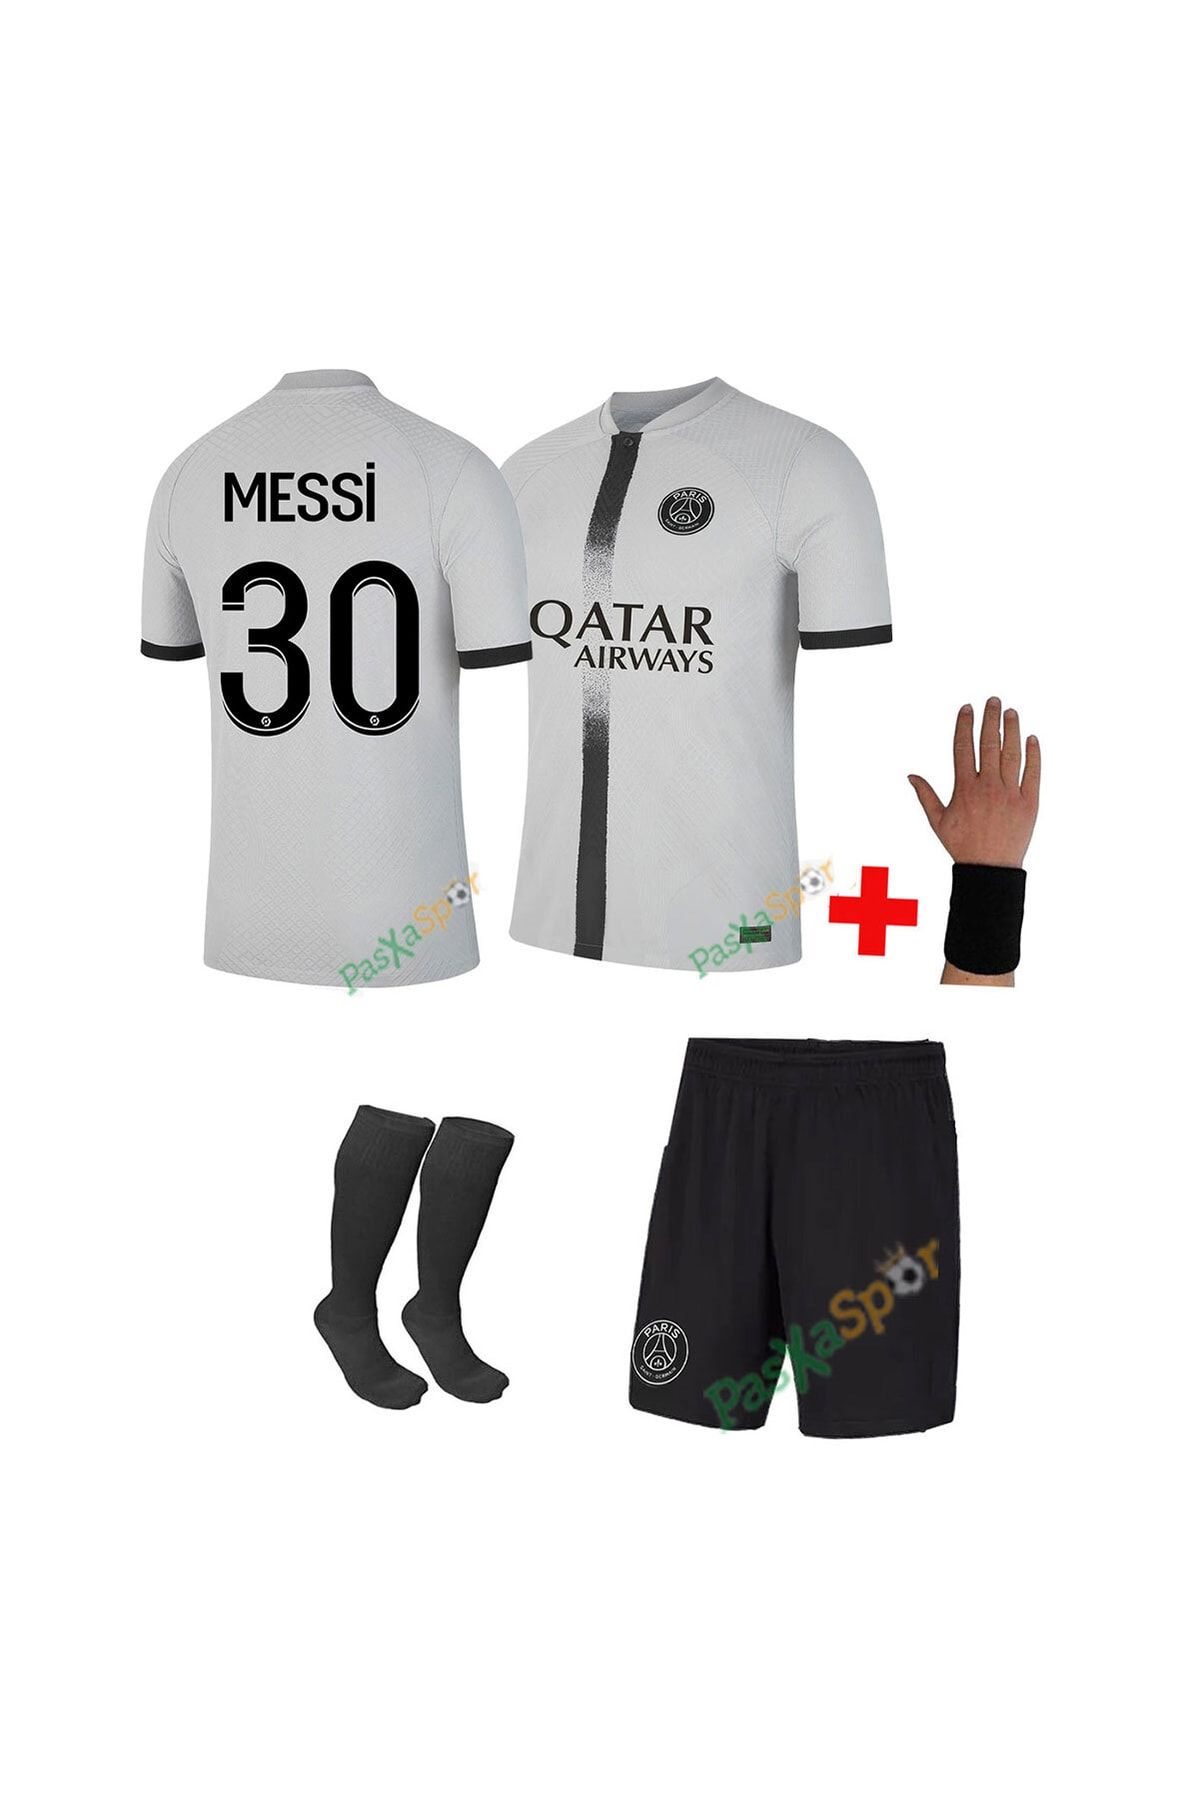 Pasxaspor Yeni Sezon Messi Deplasman Çocuk Maç Forması Şort Çorap Bileklik Hediye